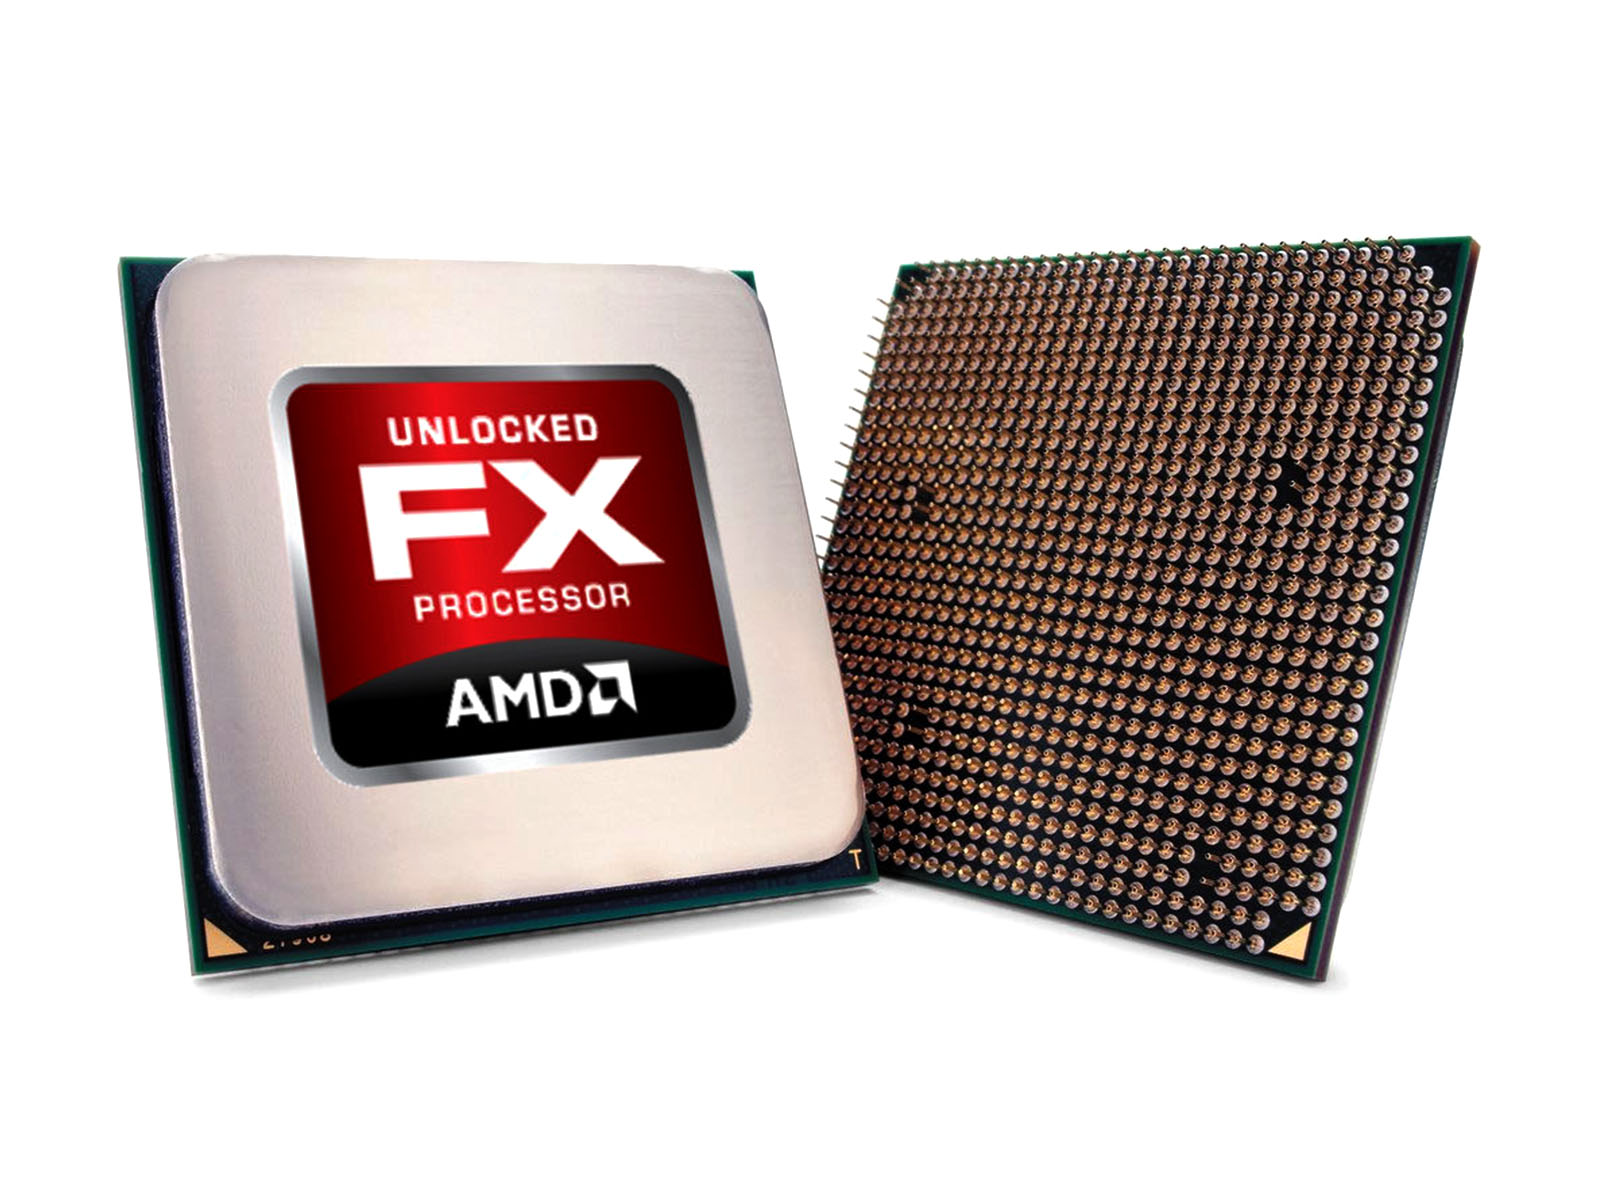 AMD FX-4300 CPU